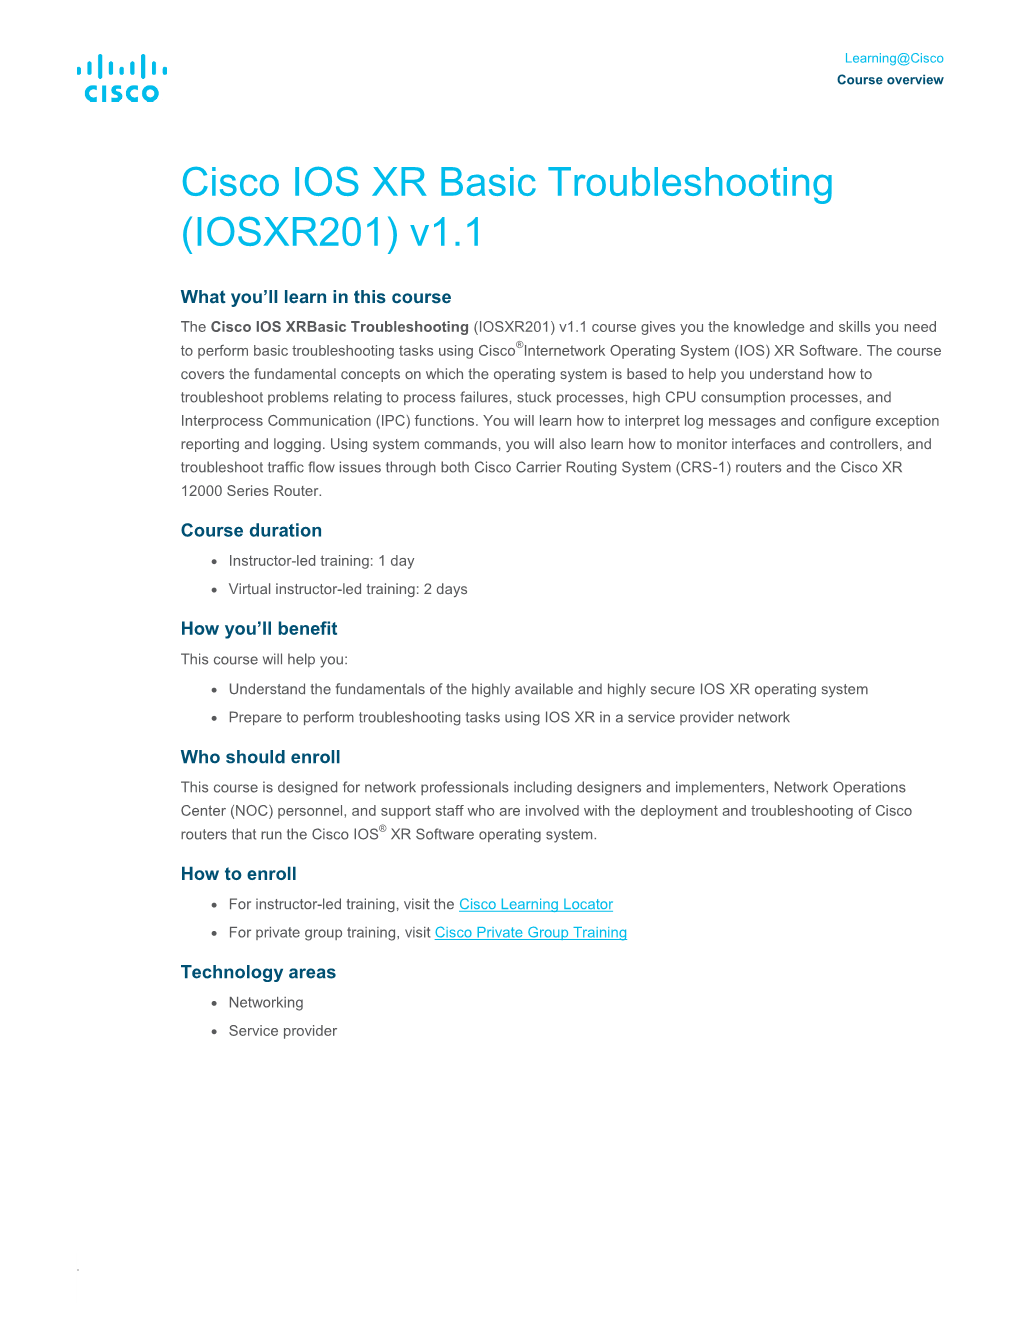 Cisco IOS XR Basic Troubleshooting (IOSXR201) V1.1